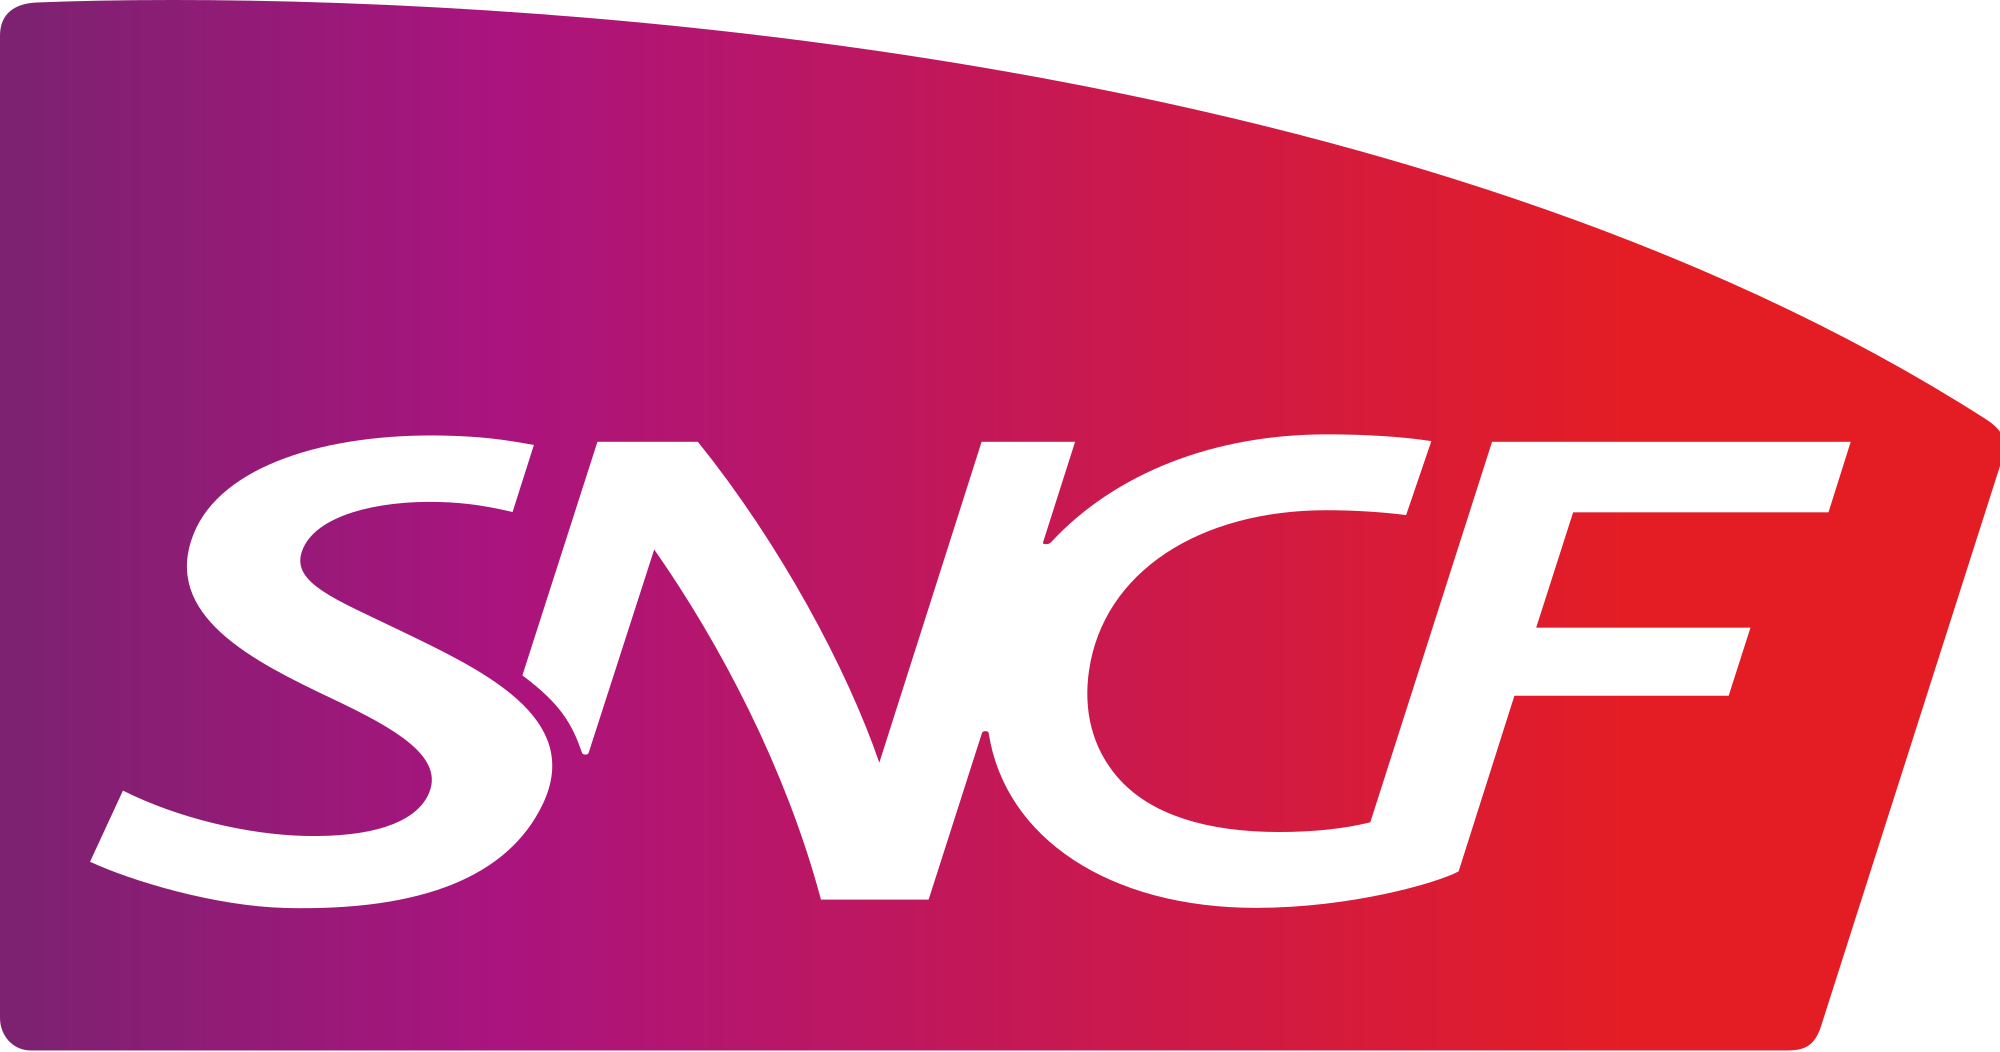 SNCF - Nationale des Chemins de fer Français - Национальная компания французских железных дорог